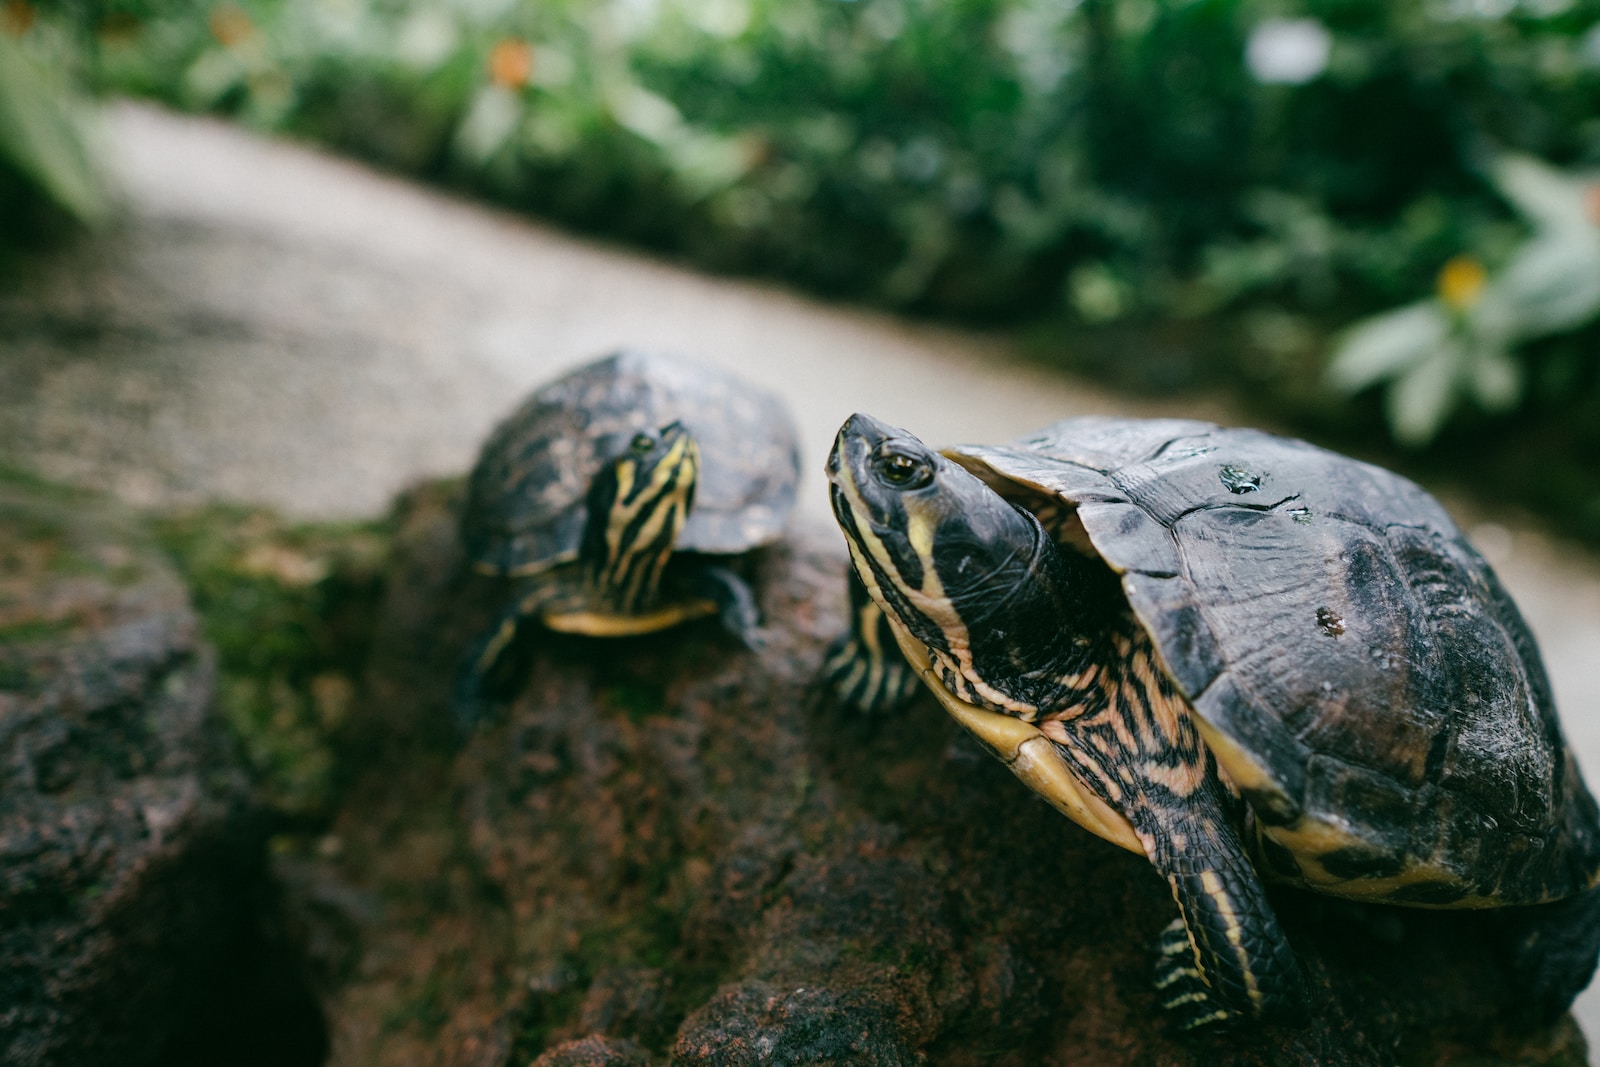 Schildkröten und ihre faszinierende Kommunikation: Eine entdeckungsreiche Reise